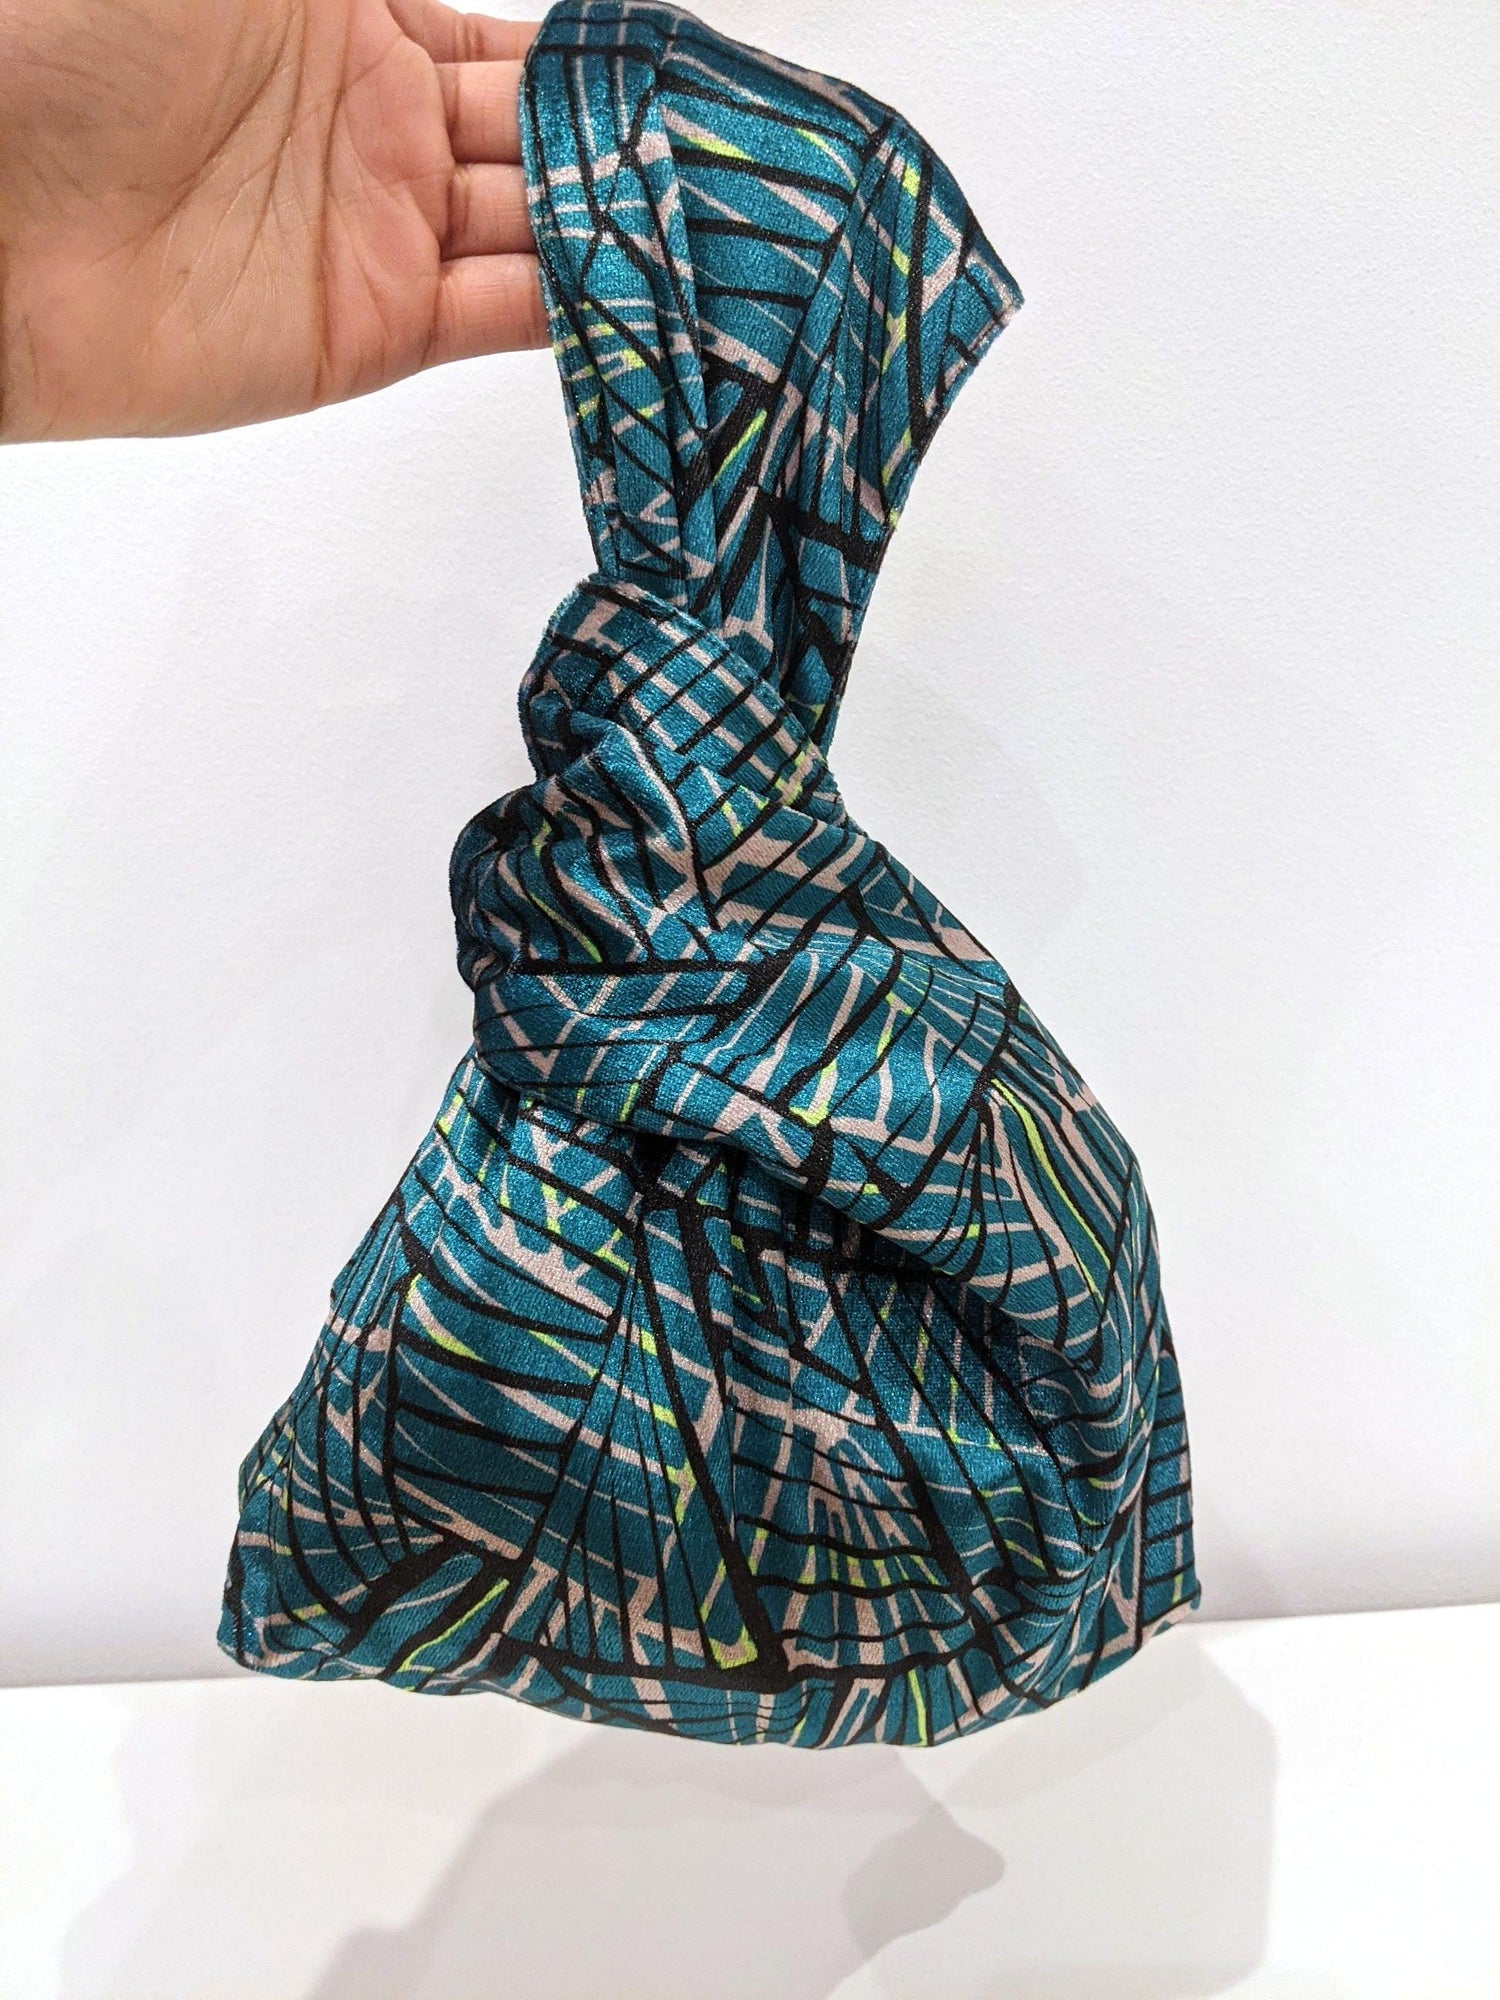 Velvet Japanese Wrist Bag in Peak Pattern (SAMPLE) - OlaOla